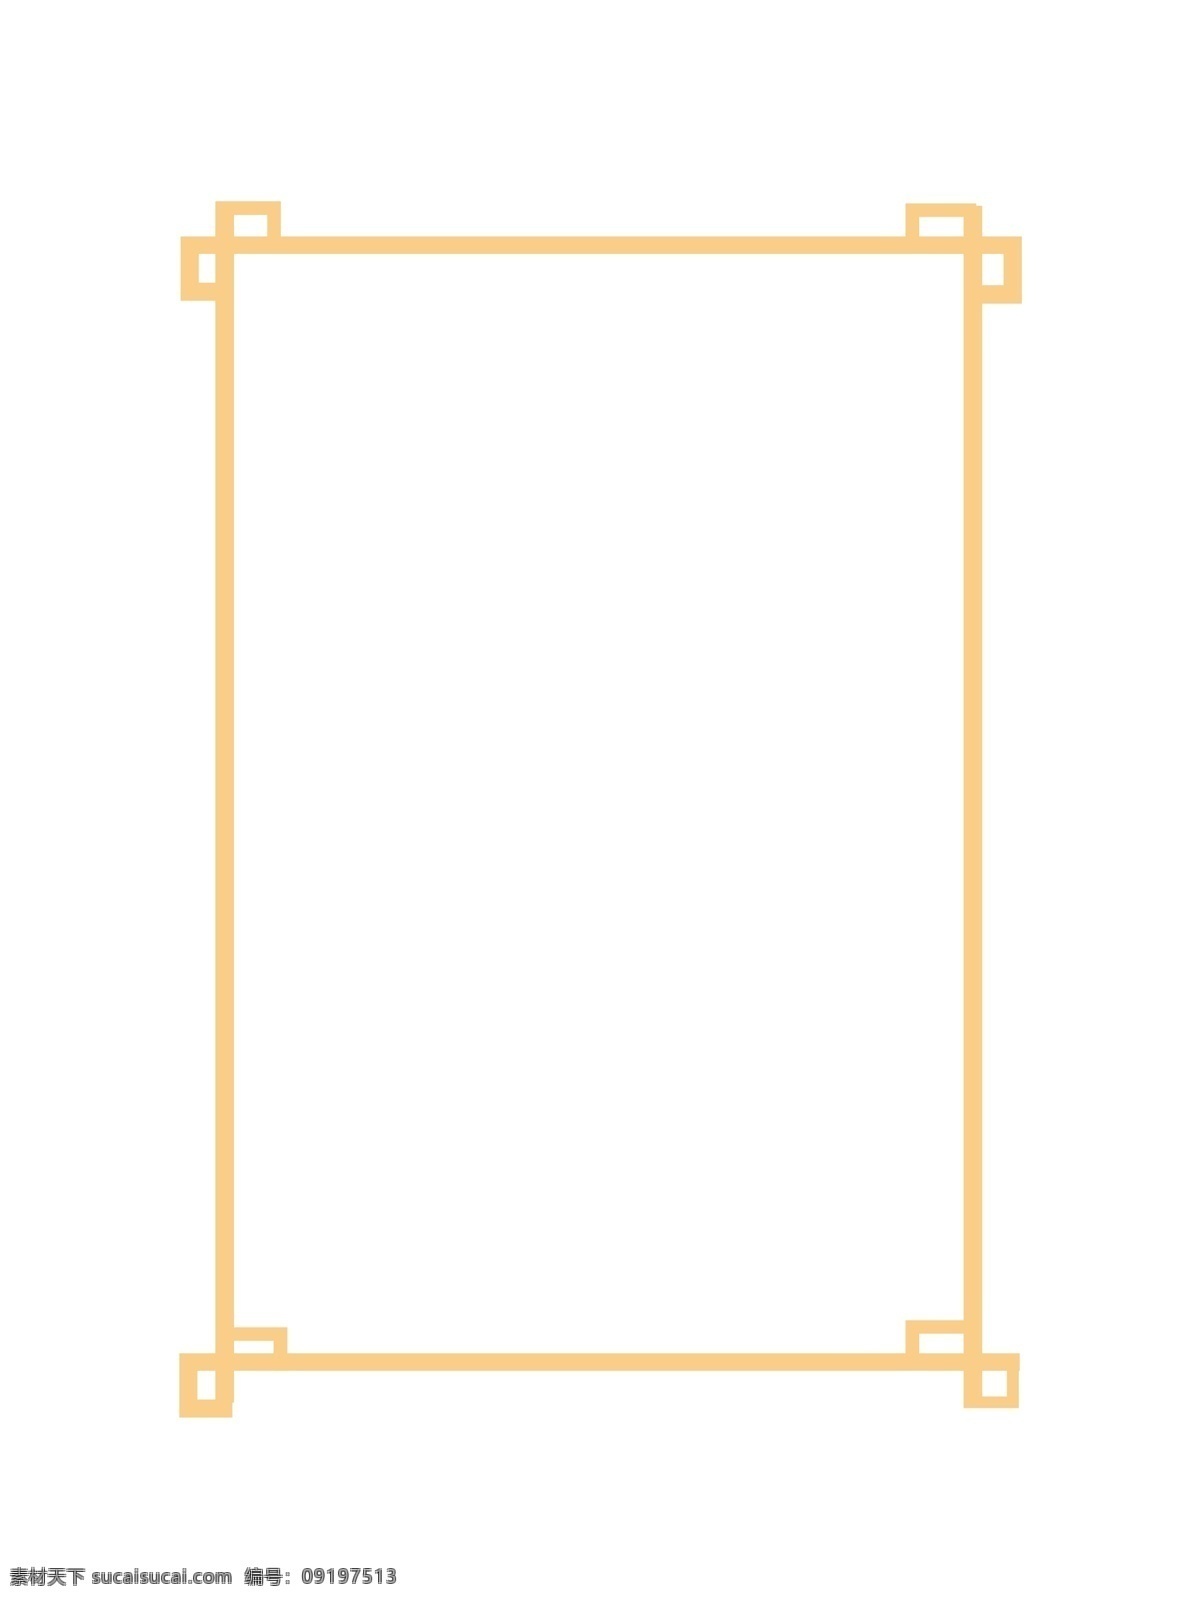 黄色 中国 风 古典 框架 古典框架 欧式边框 边框纹理 黄色边框 欧式框架 花纹边框